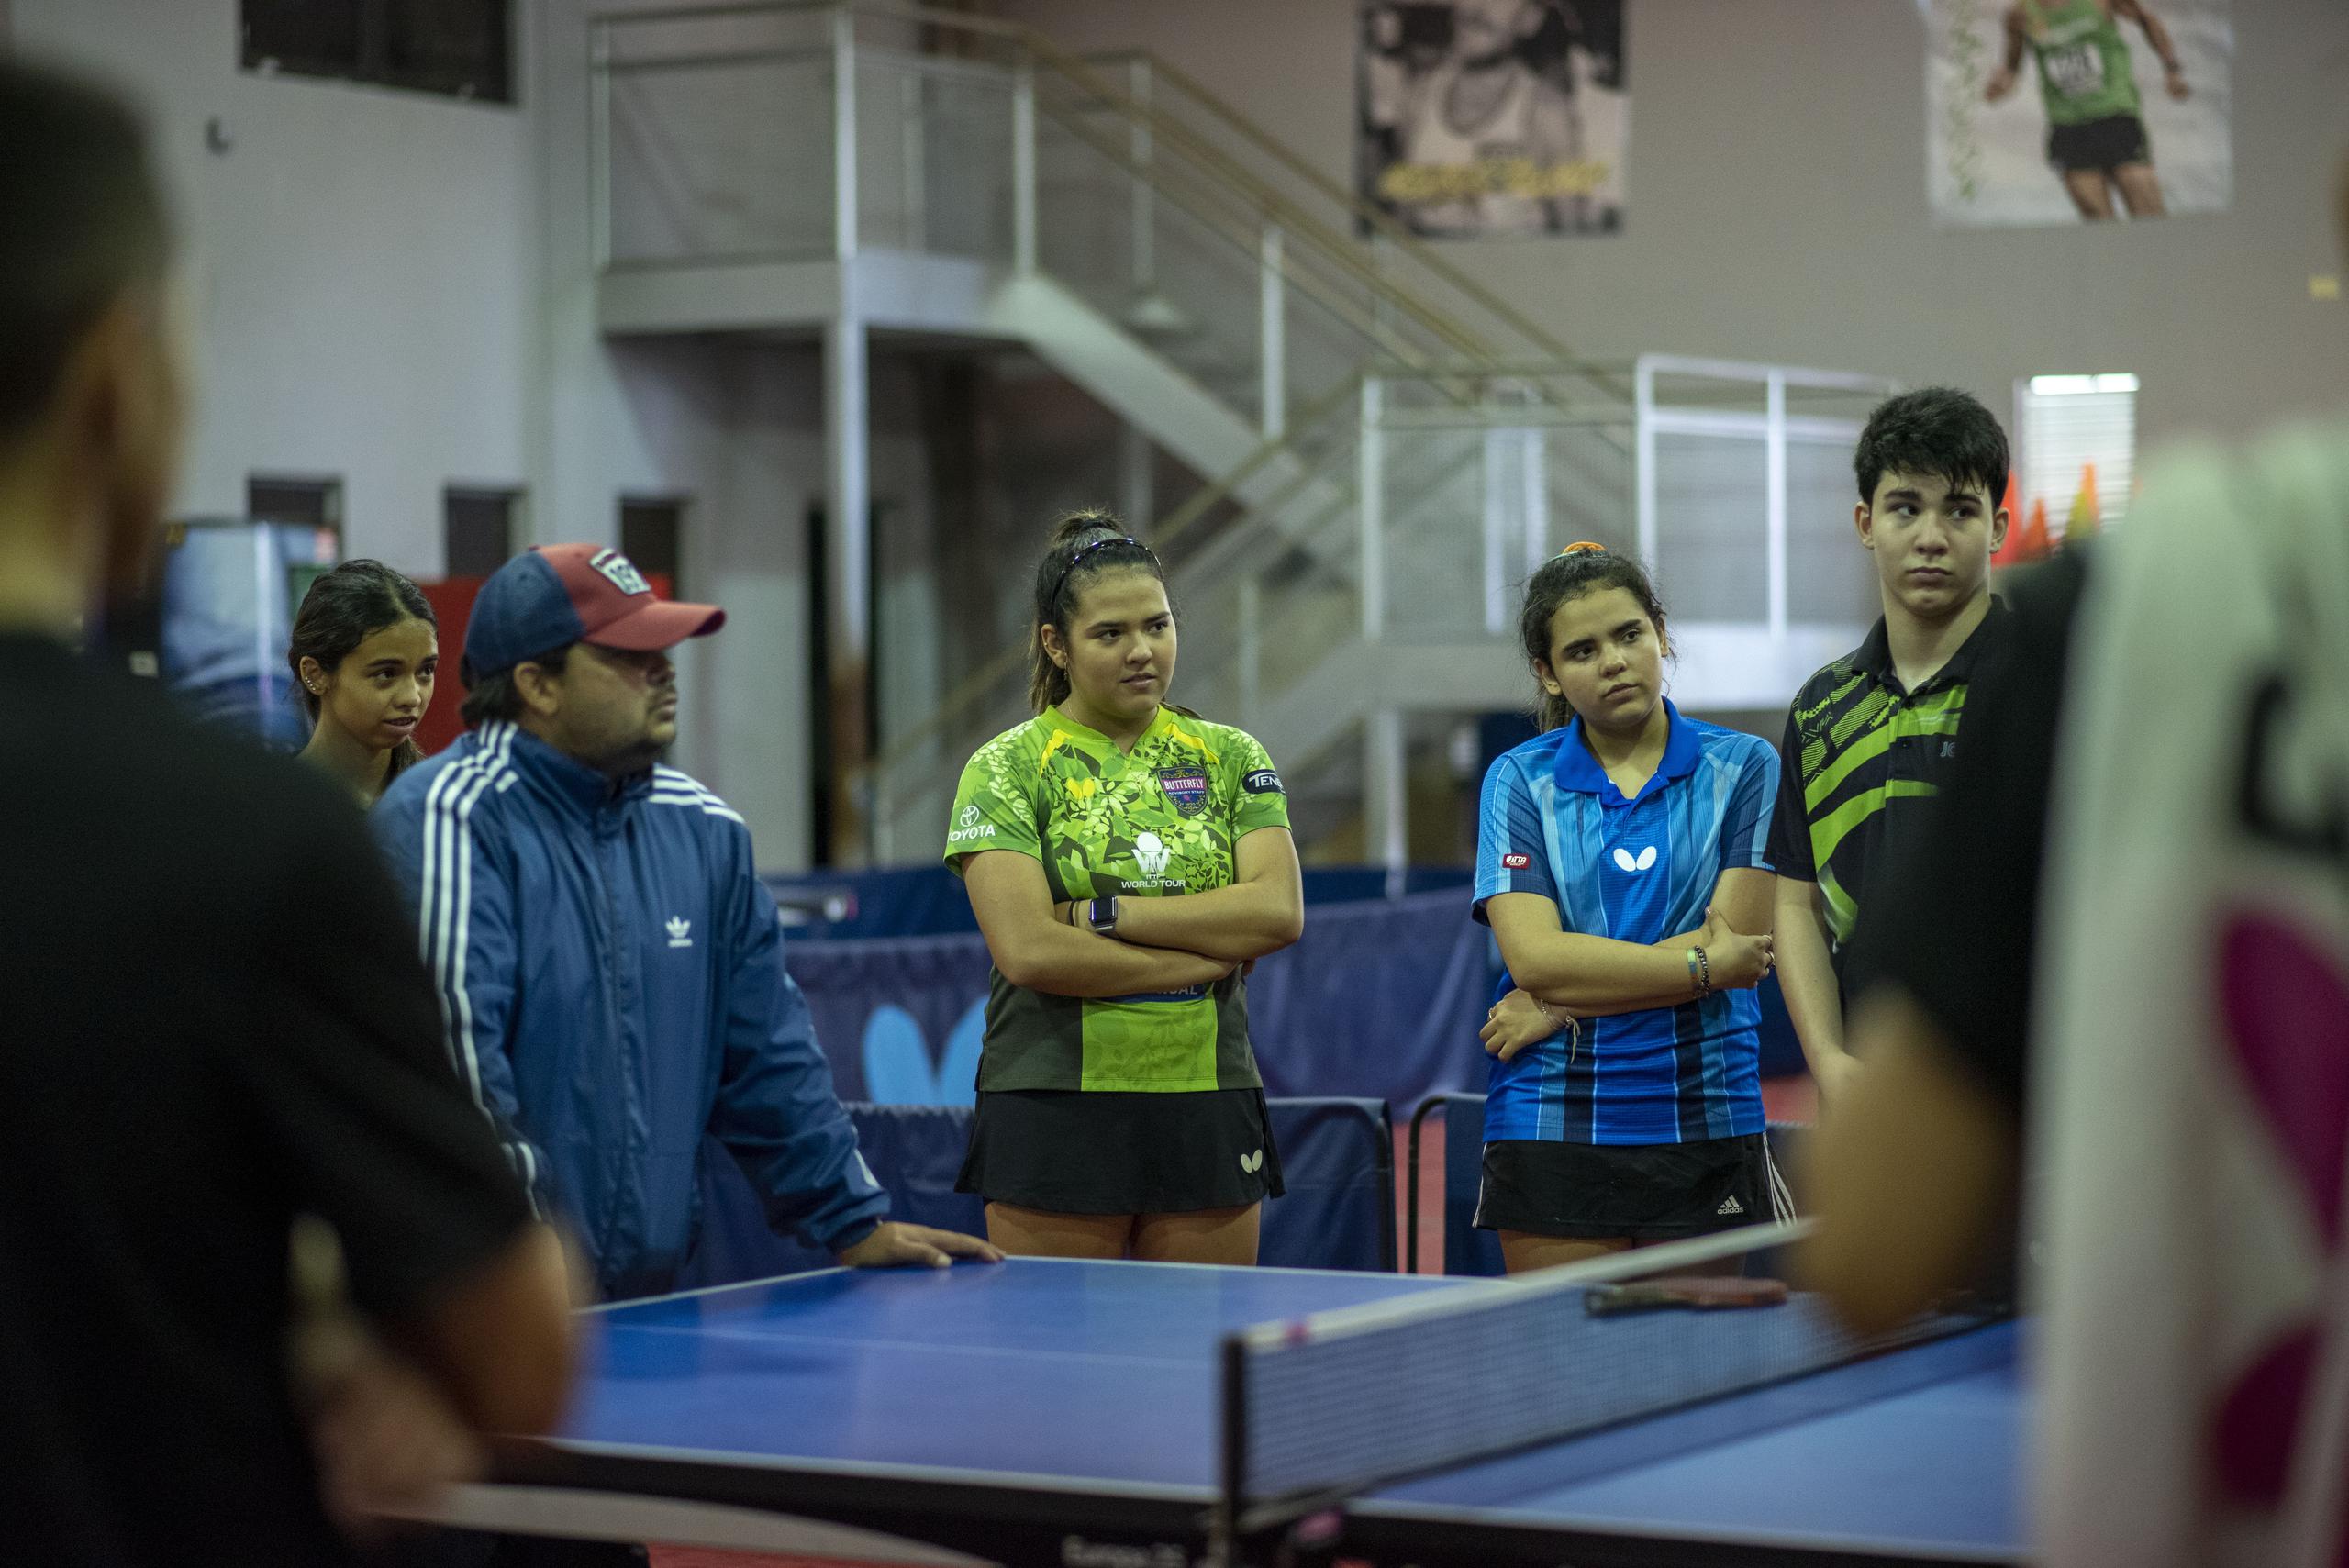 Bladimir Díaz, entrenador del equipo nacional femenino, y un grupo de atletas escuchan mientras otra persona les ofrece una instrucción.